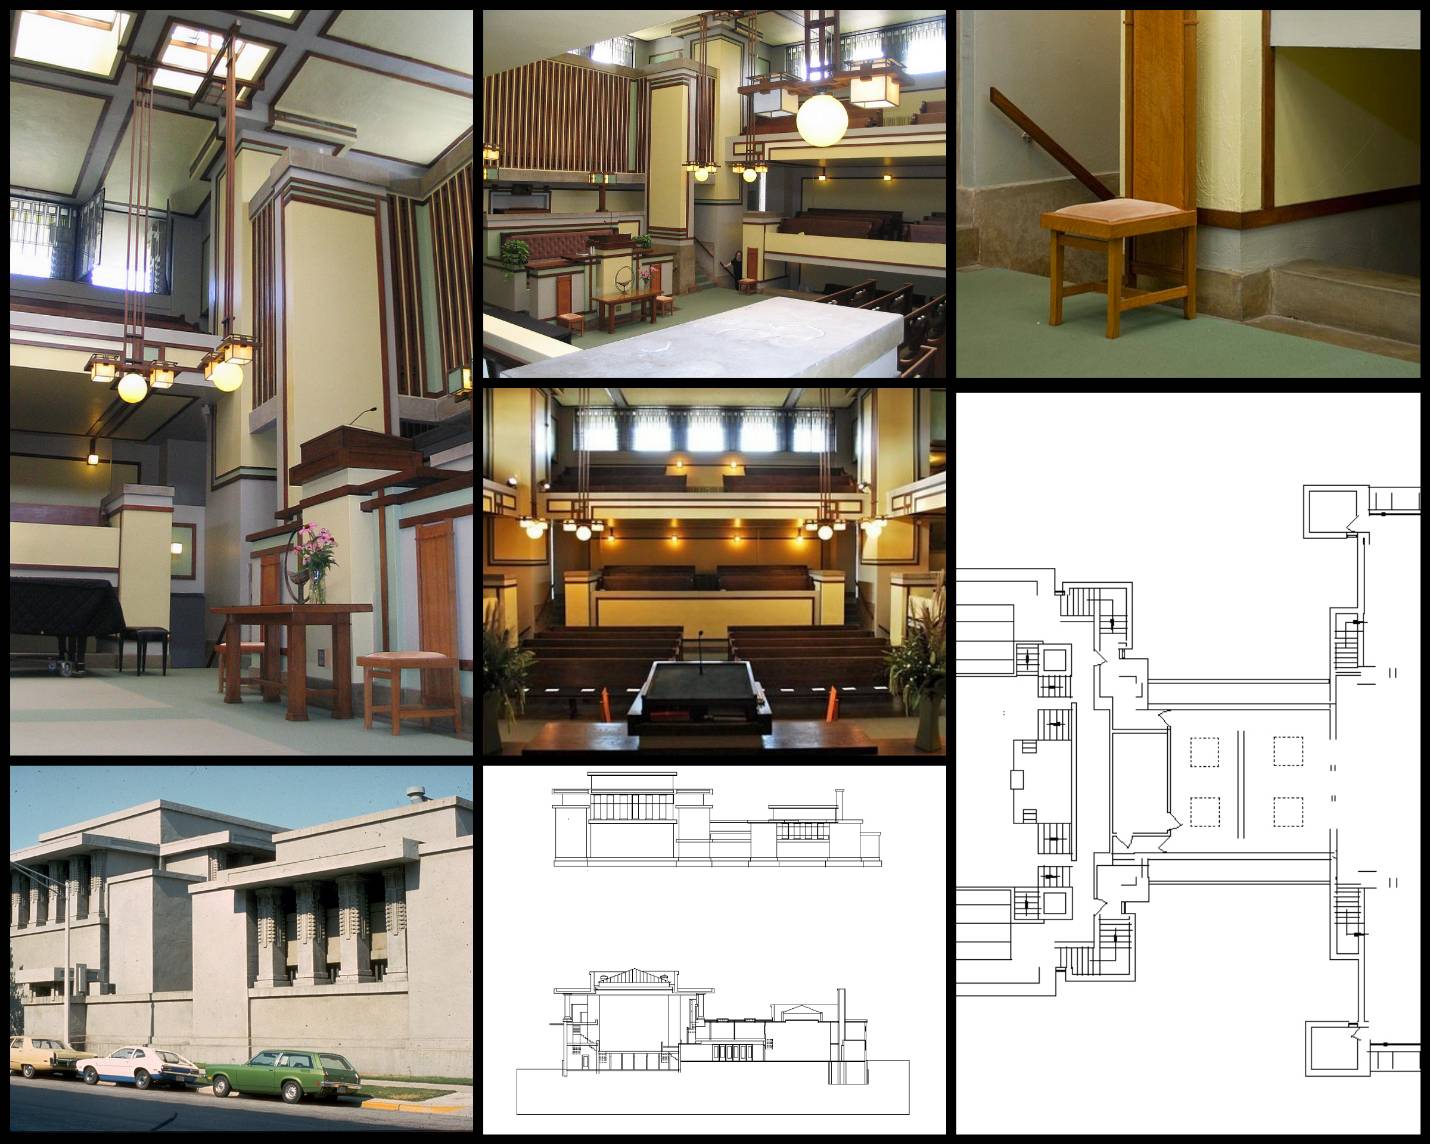 【世界知名建築案例研究CAD設計施工圖】Unity Temple團結神殿-法蘭克·洛伊·萊特 Frank Lloyd Wright